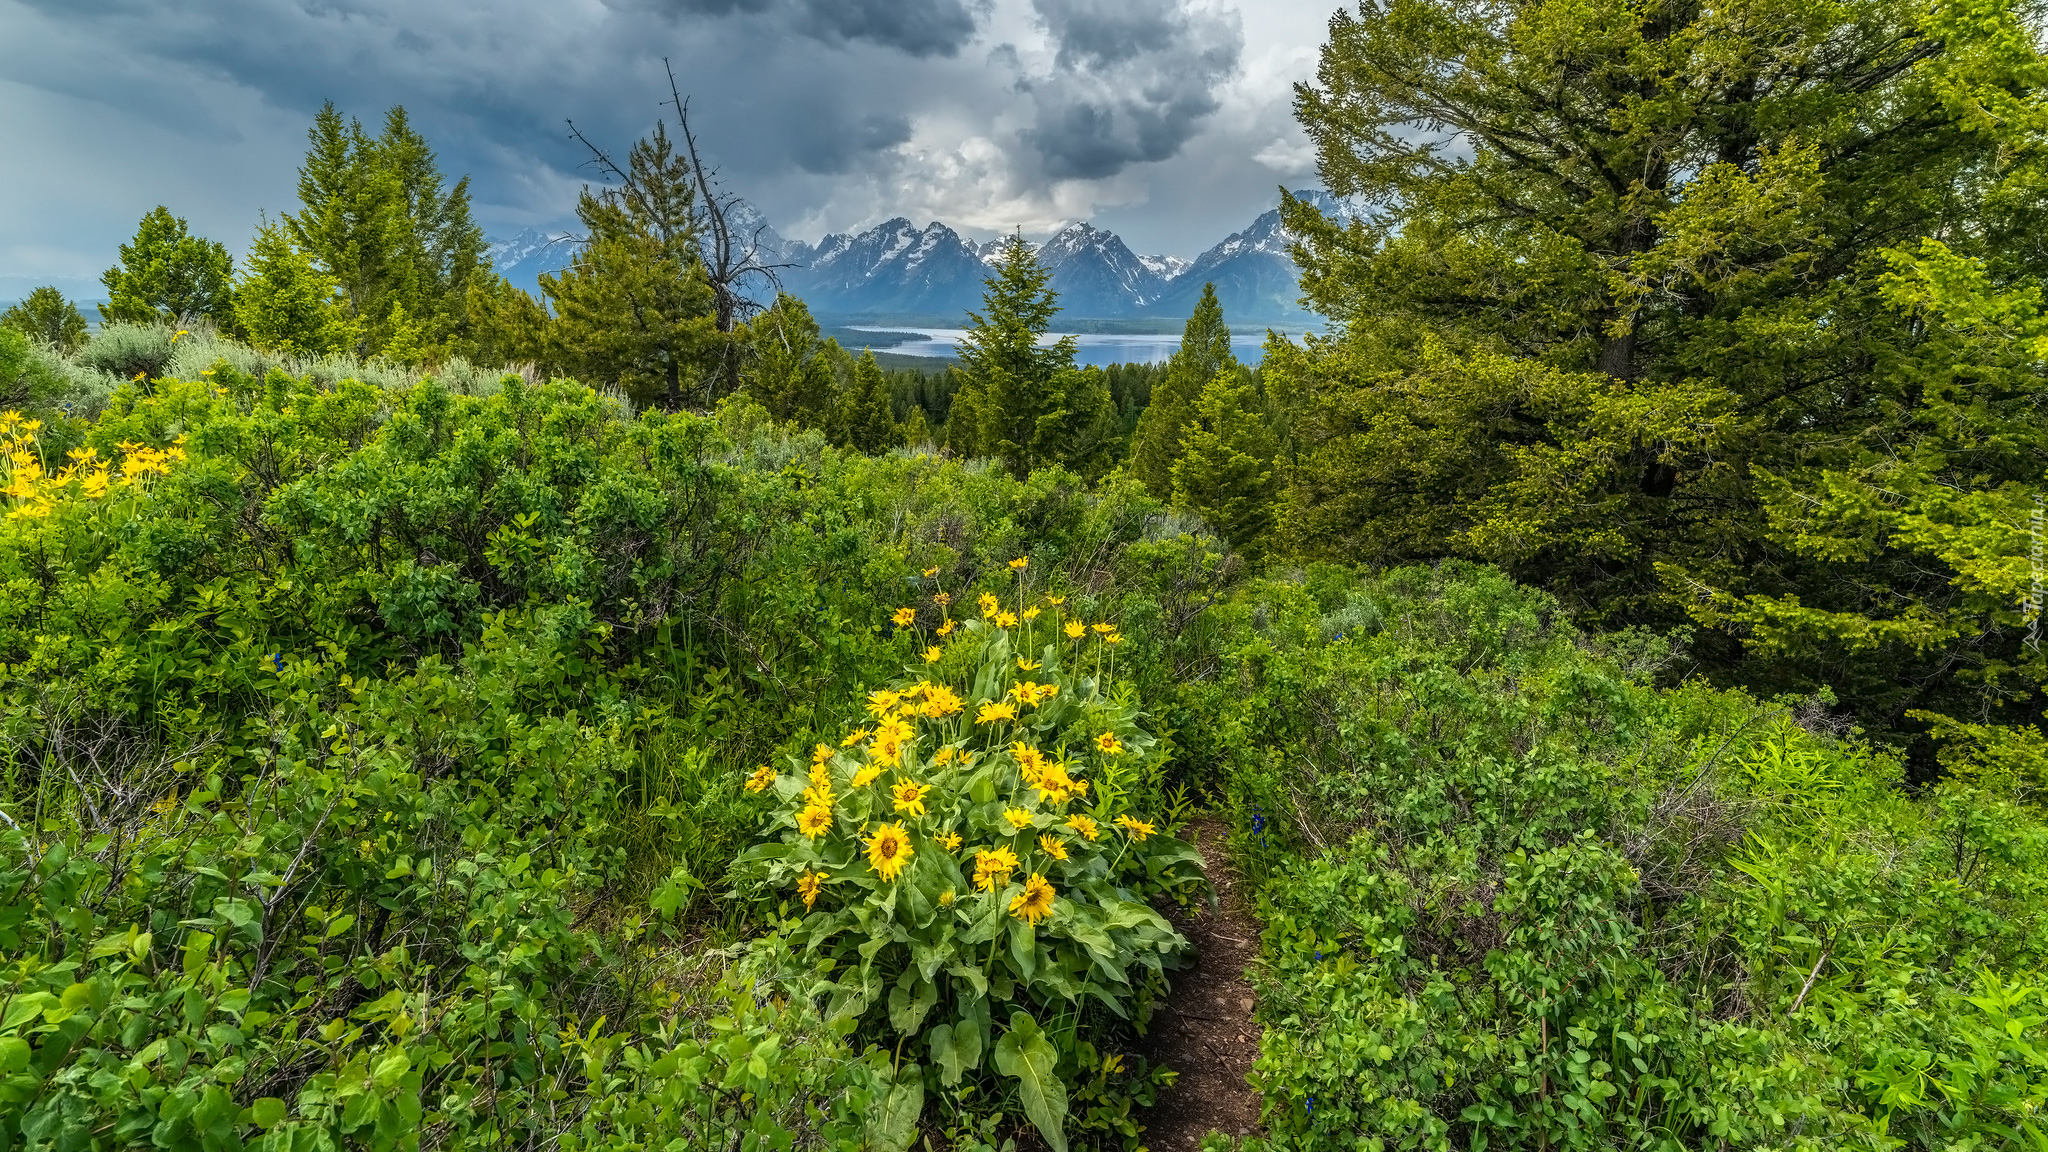 Kwiaty, Balsamorhiza, Drzewa, Góry, Chmury, Park Narodowy Grand Teton, Stany Zjednoczone